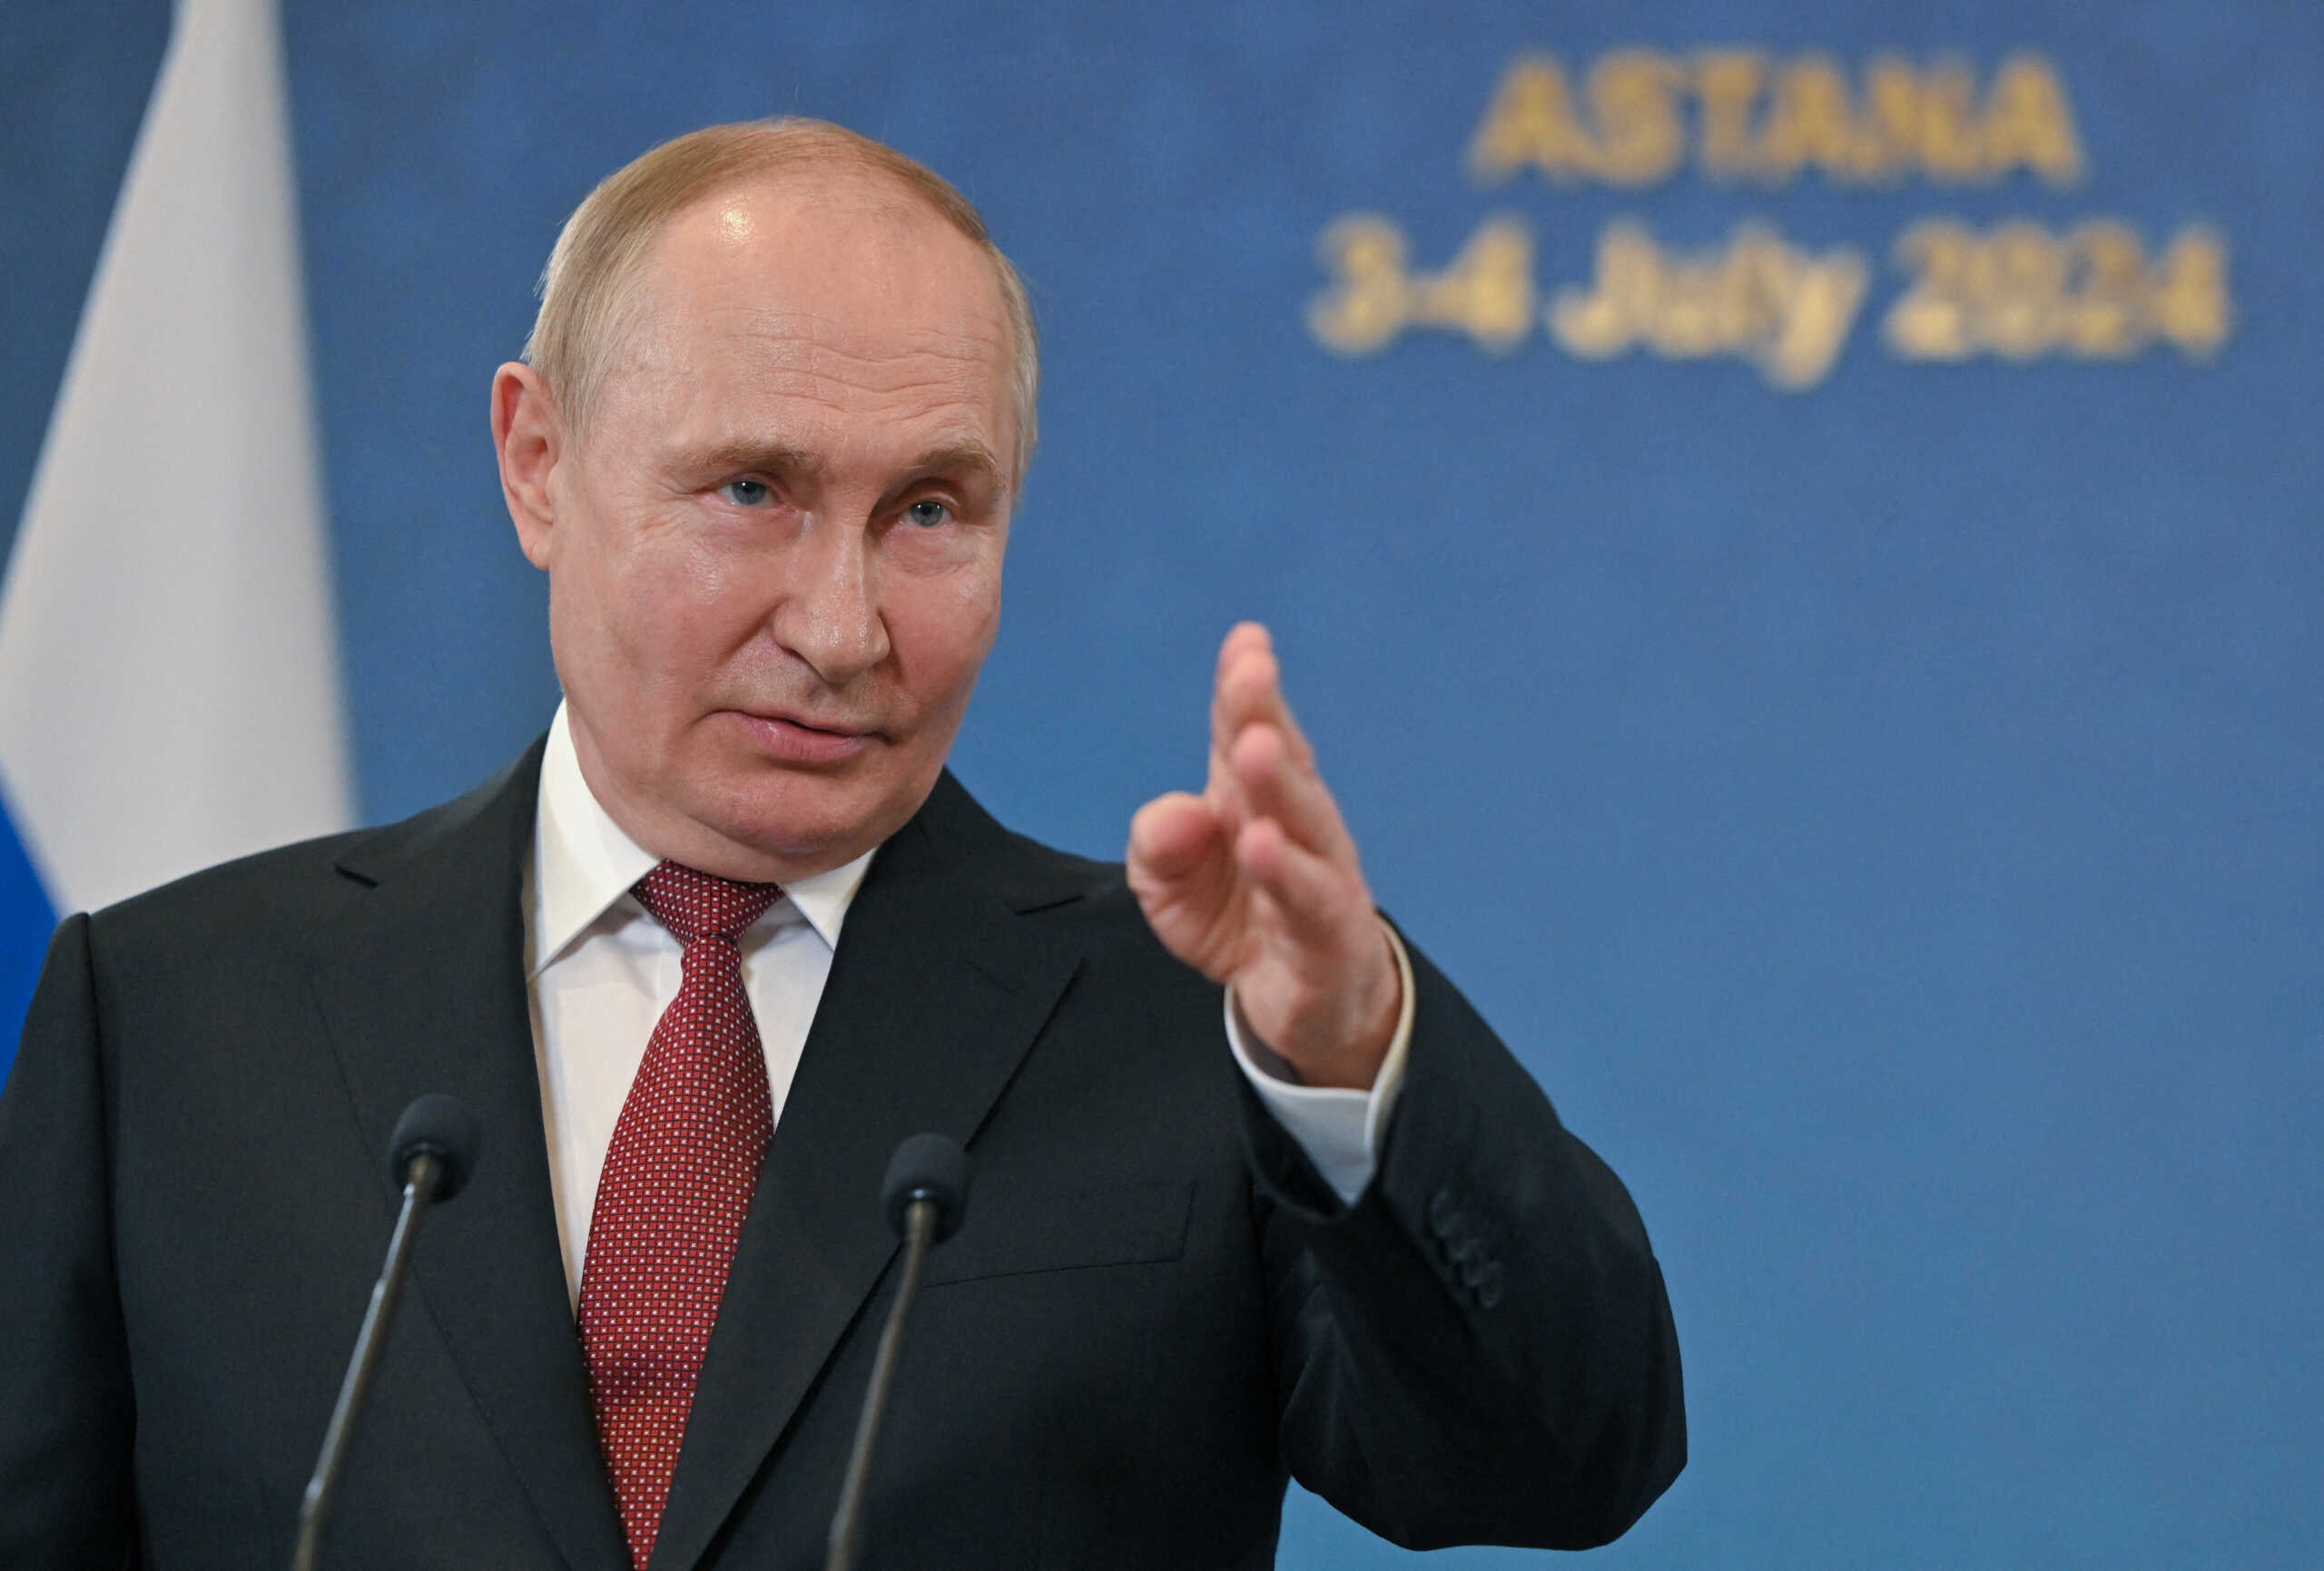 Ο Βλαντίμιρ Πούτιν εξακολουθεί να υποστηρίζει τον Τζο Μπάιντεν παρά το ντιμπέιτ